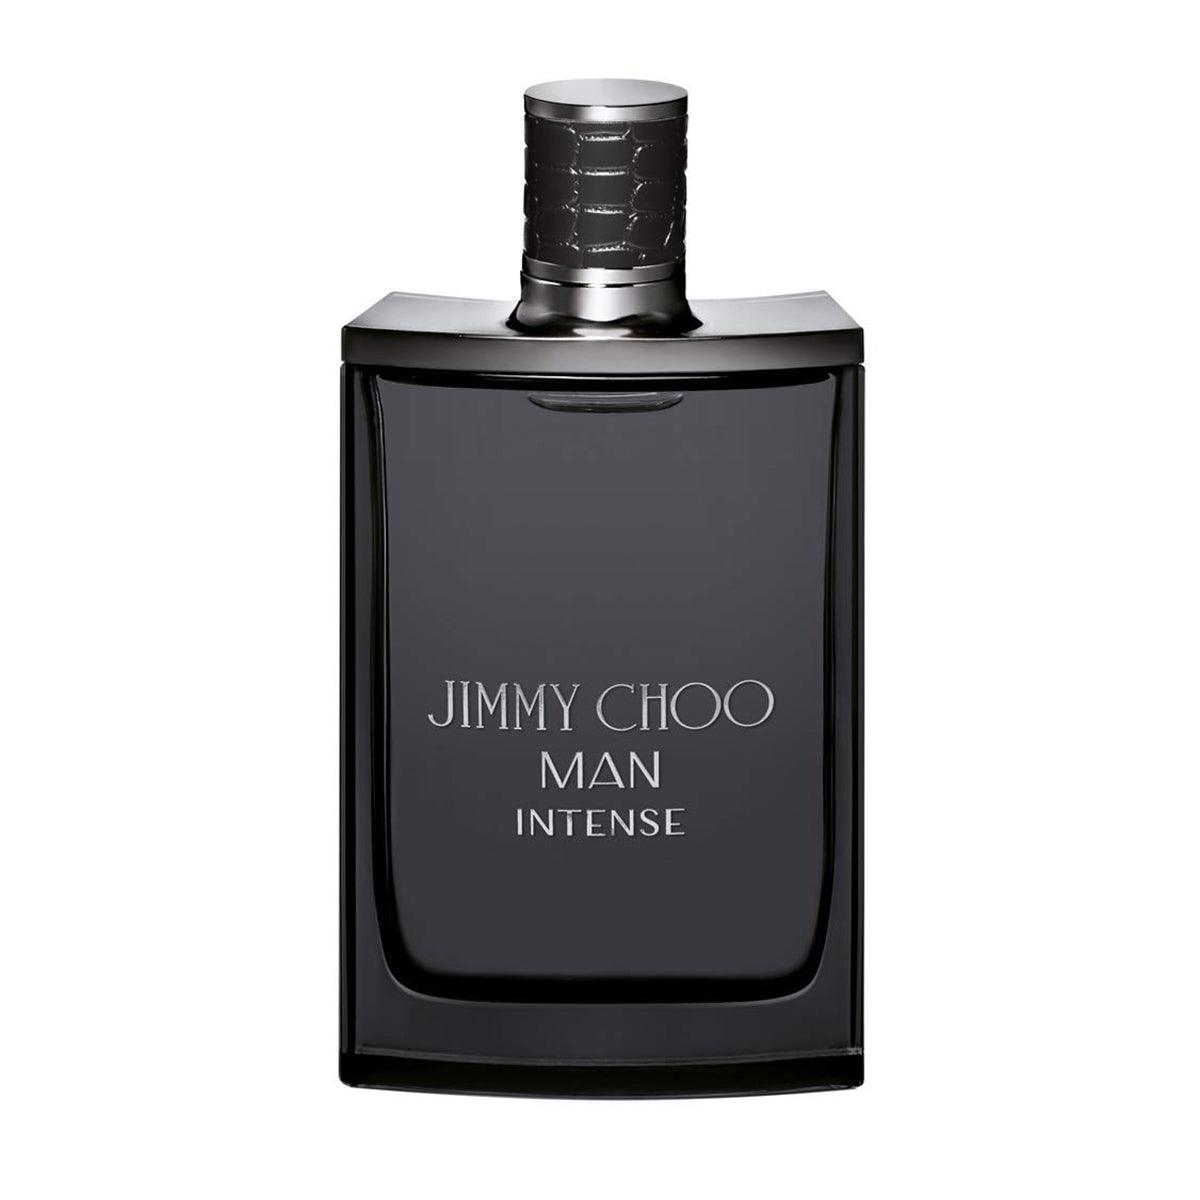 Jimmy Choo Intense For Men Edt 100ml Spray-Perfume - Allurebeautypk